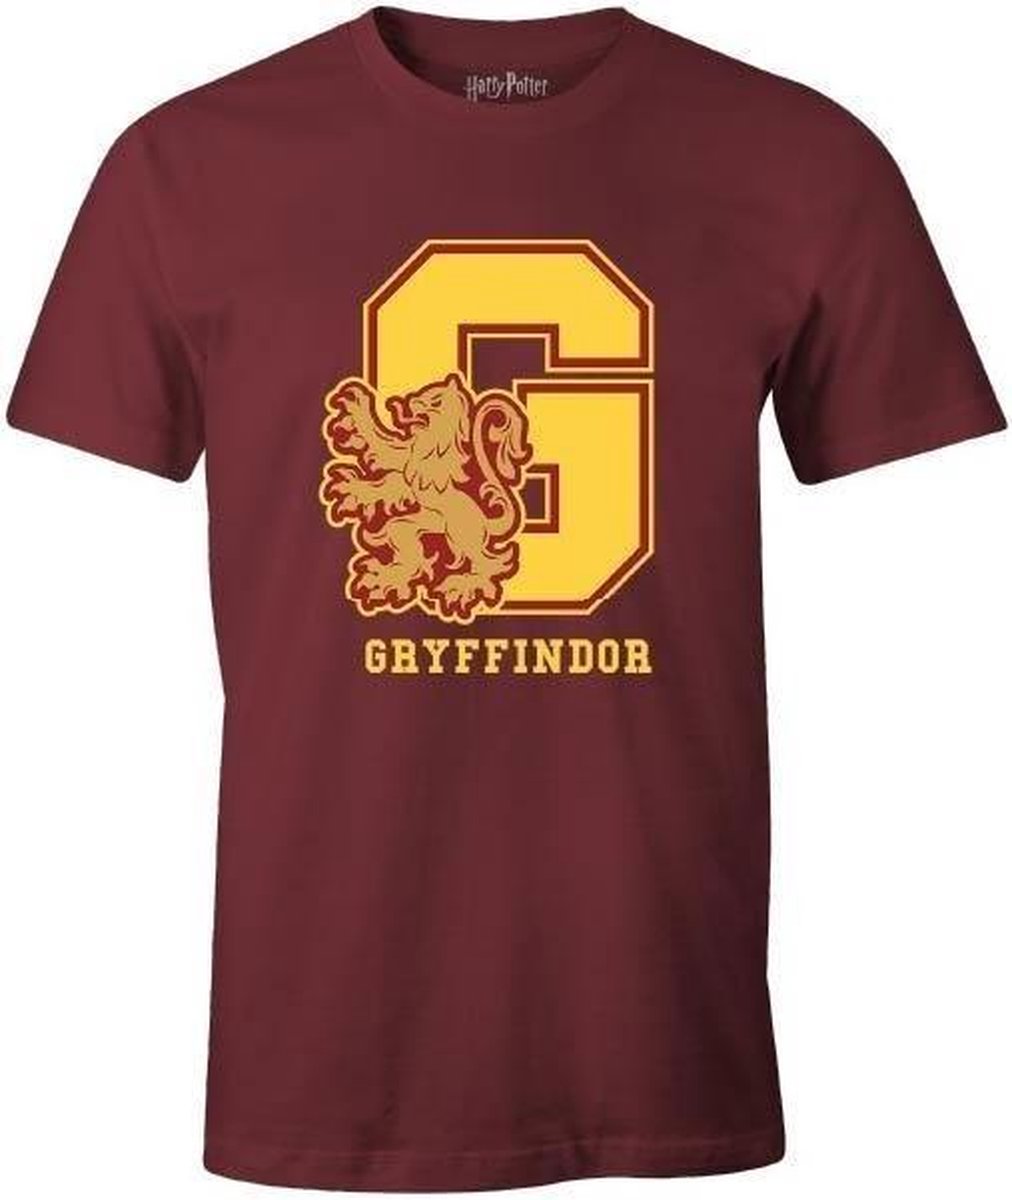 Harry Potter - Burgundy Men's T-shirt - G Gryffindor - M